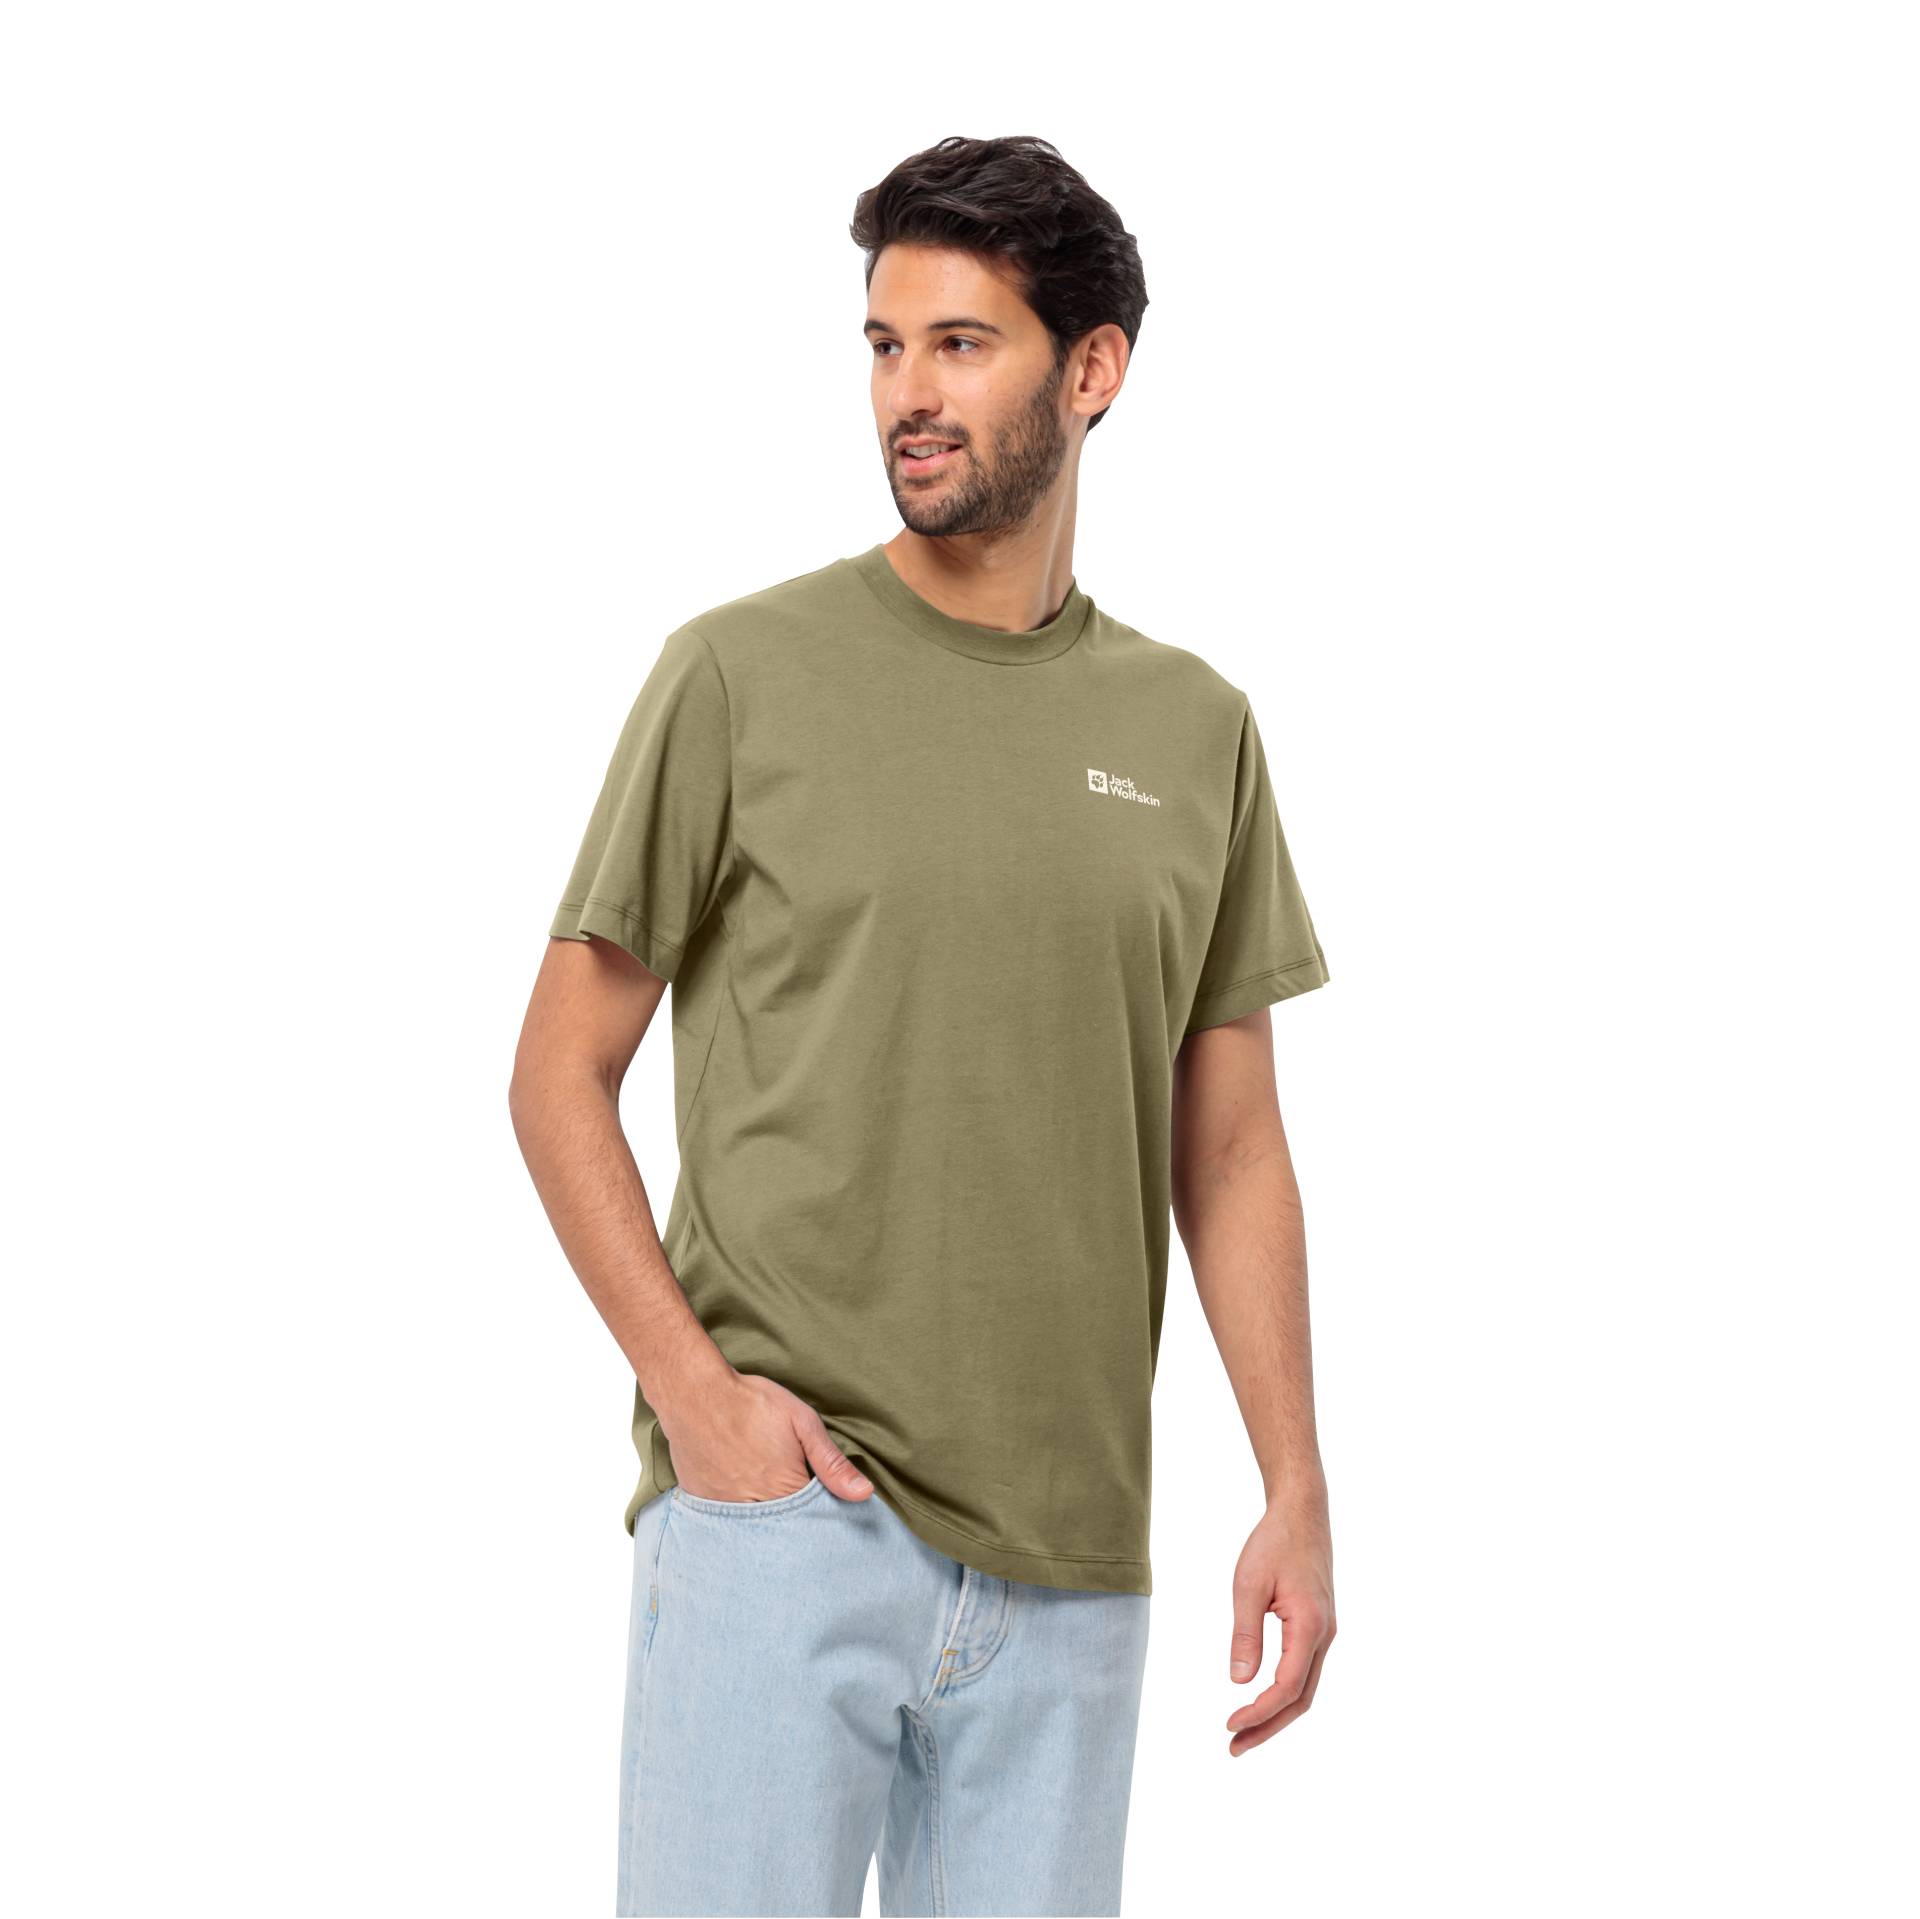 Jack Wolfskin T-Shirt »ESSENTIAL T M«, weiches, klassisches T-Shirt aus atmungsaktiver Bio-Baumwolle von Jack Wolfskin